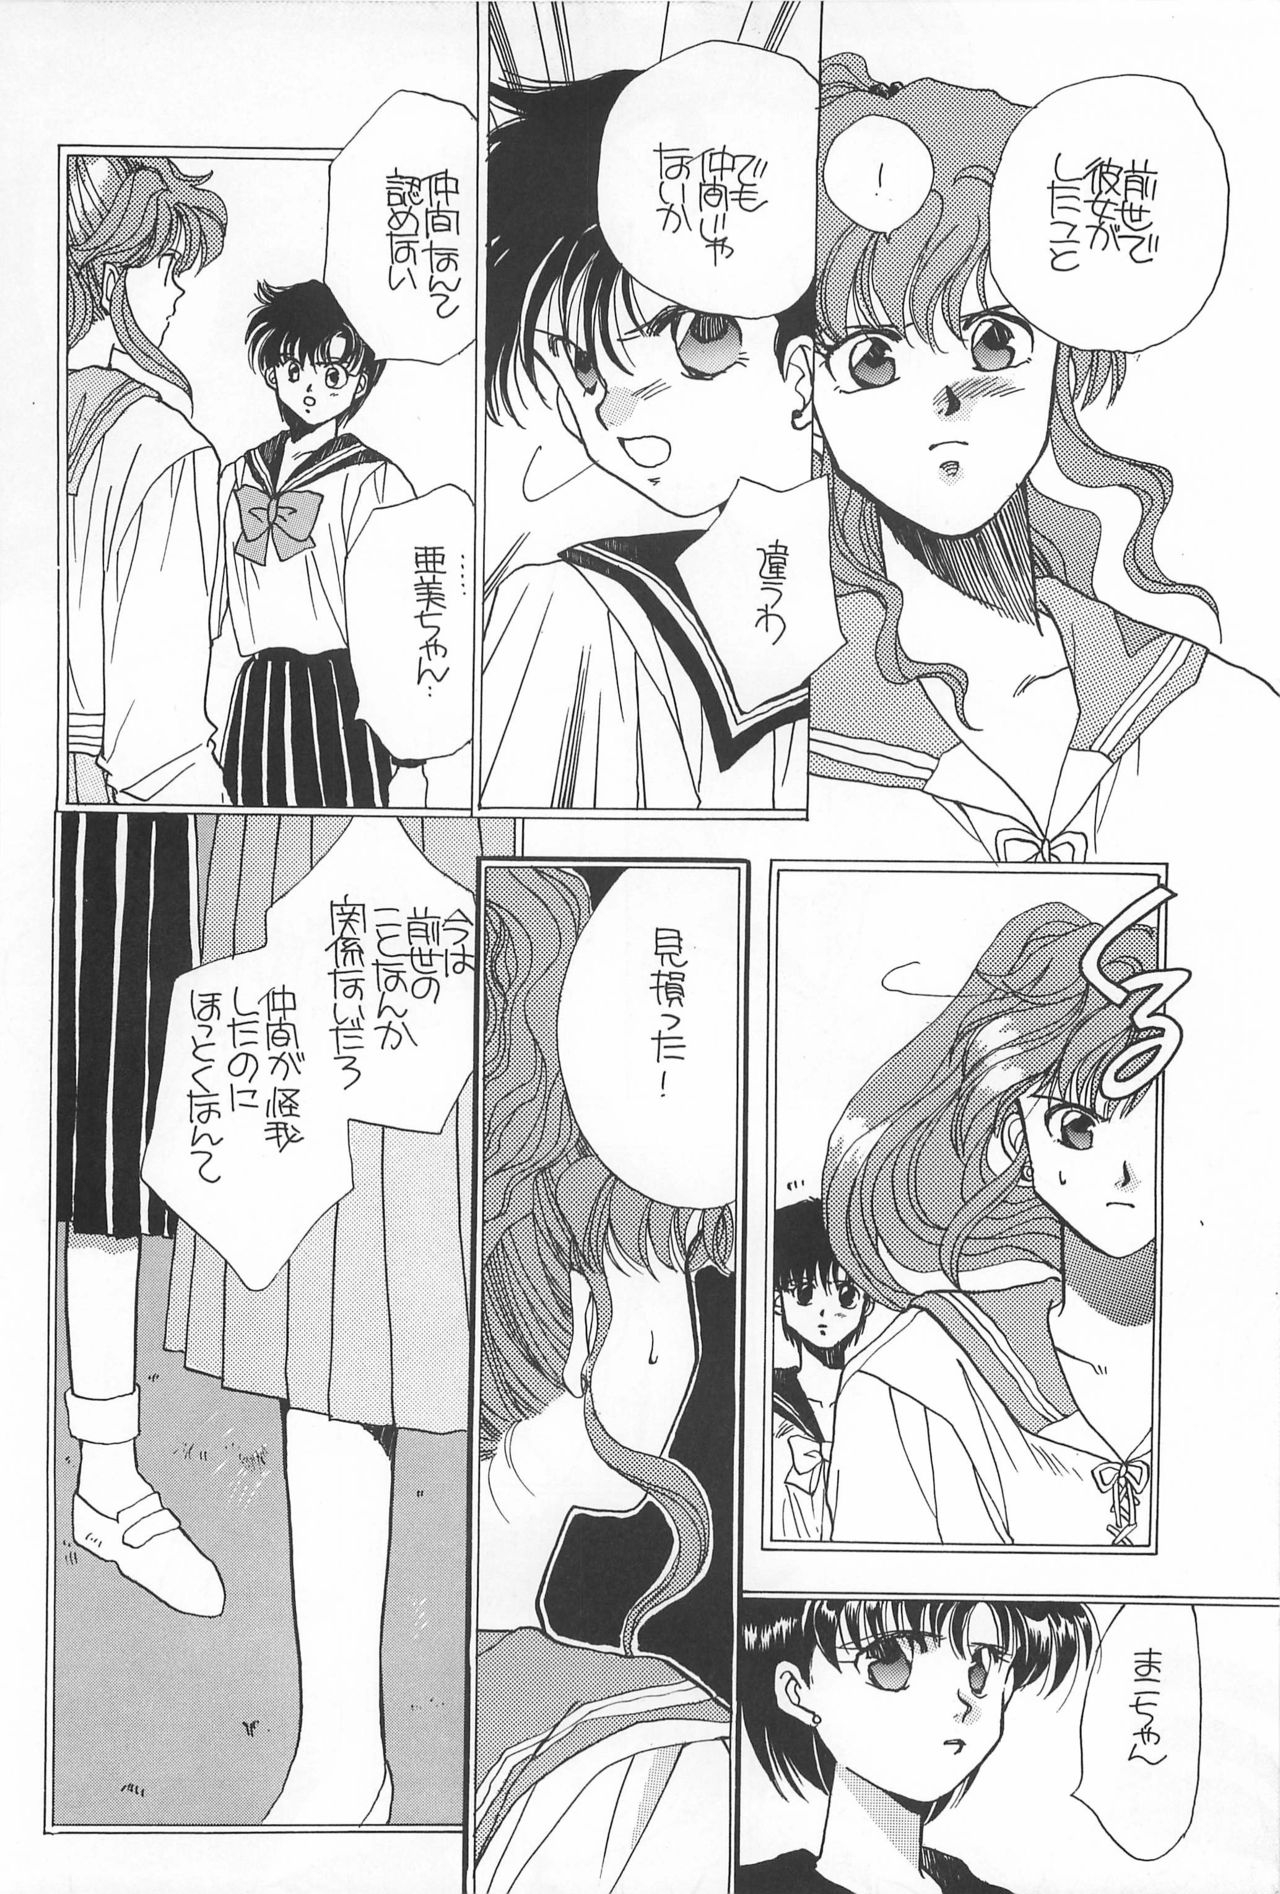 [Hello World (Muttri Moony)] Kaze no You ni Yume no You ni - Sailor Moon Collection (Sailor Moon) 167